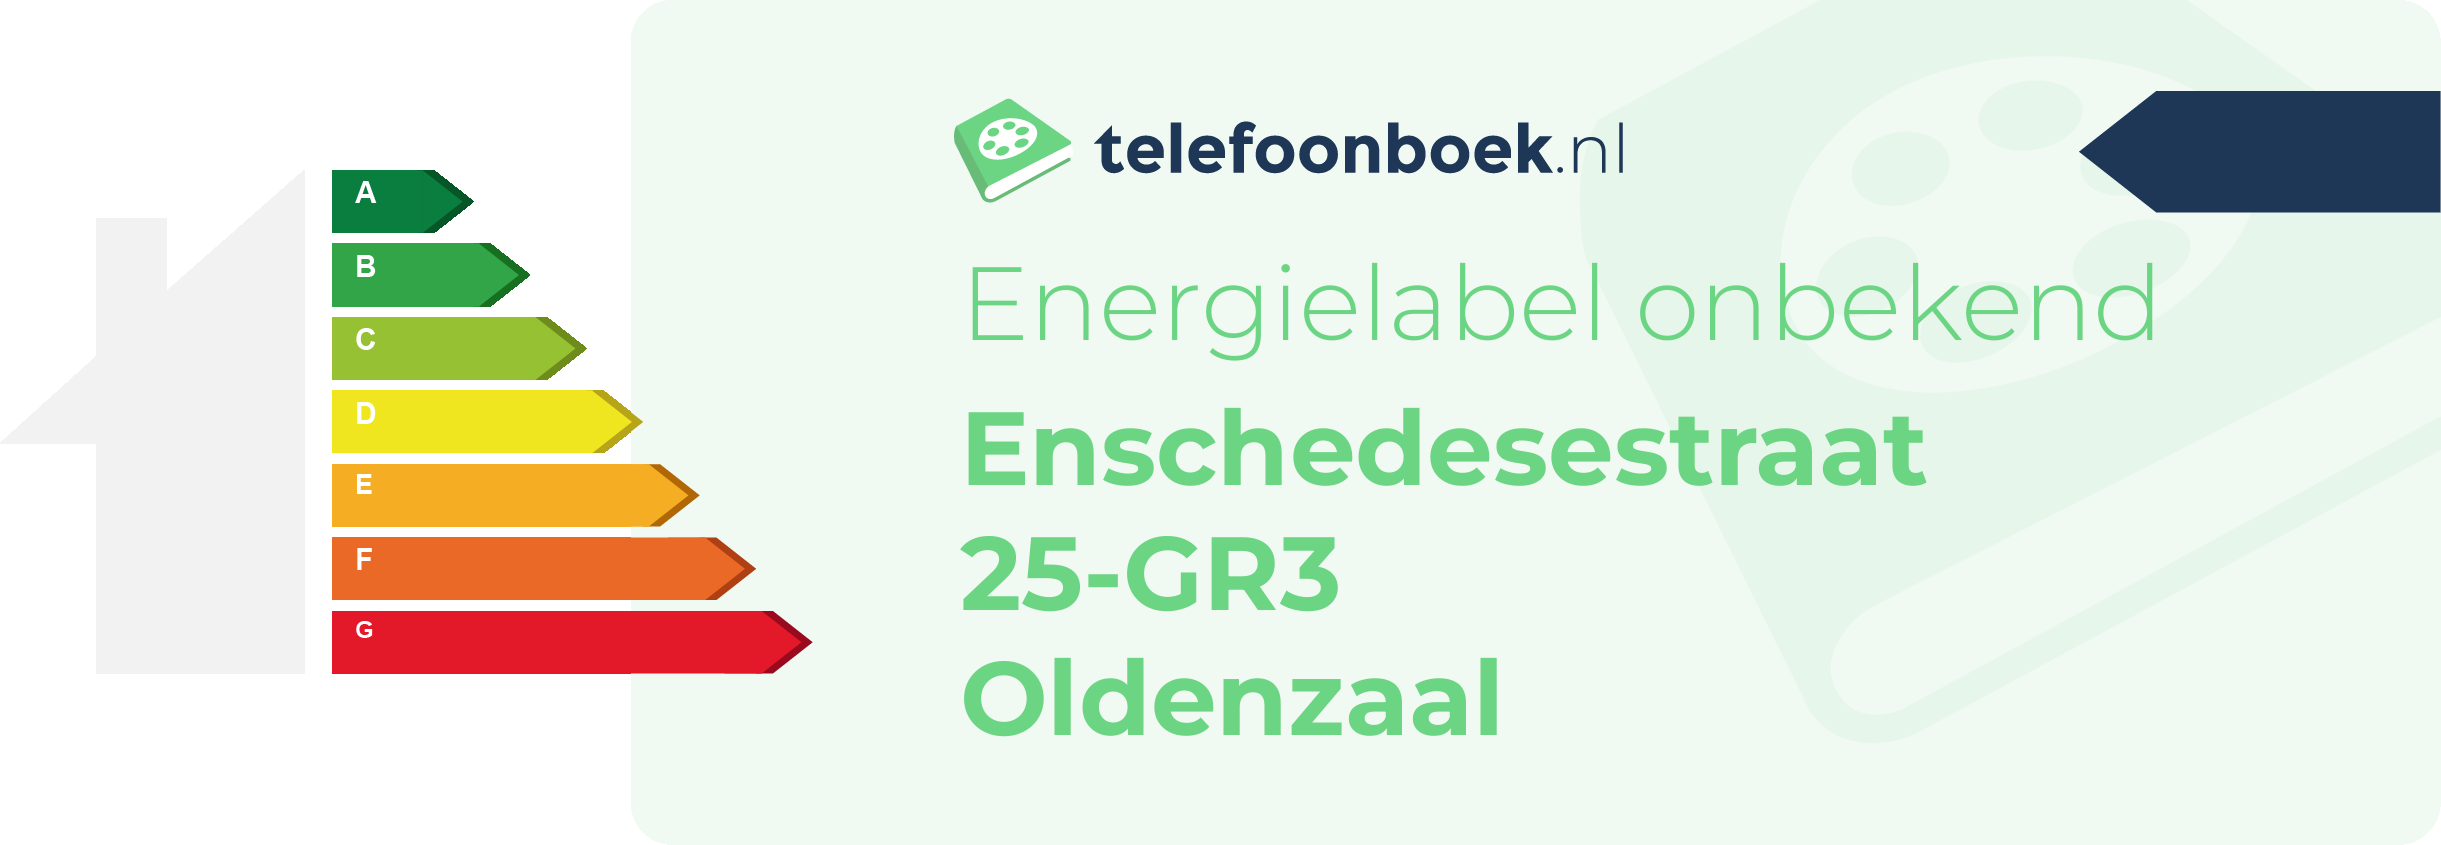 Energielabel Enschedesestraat 25-GR3 Oldenzaal